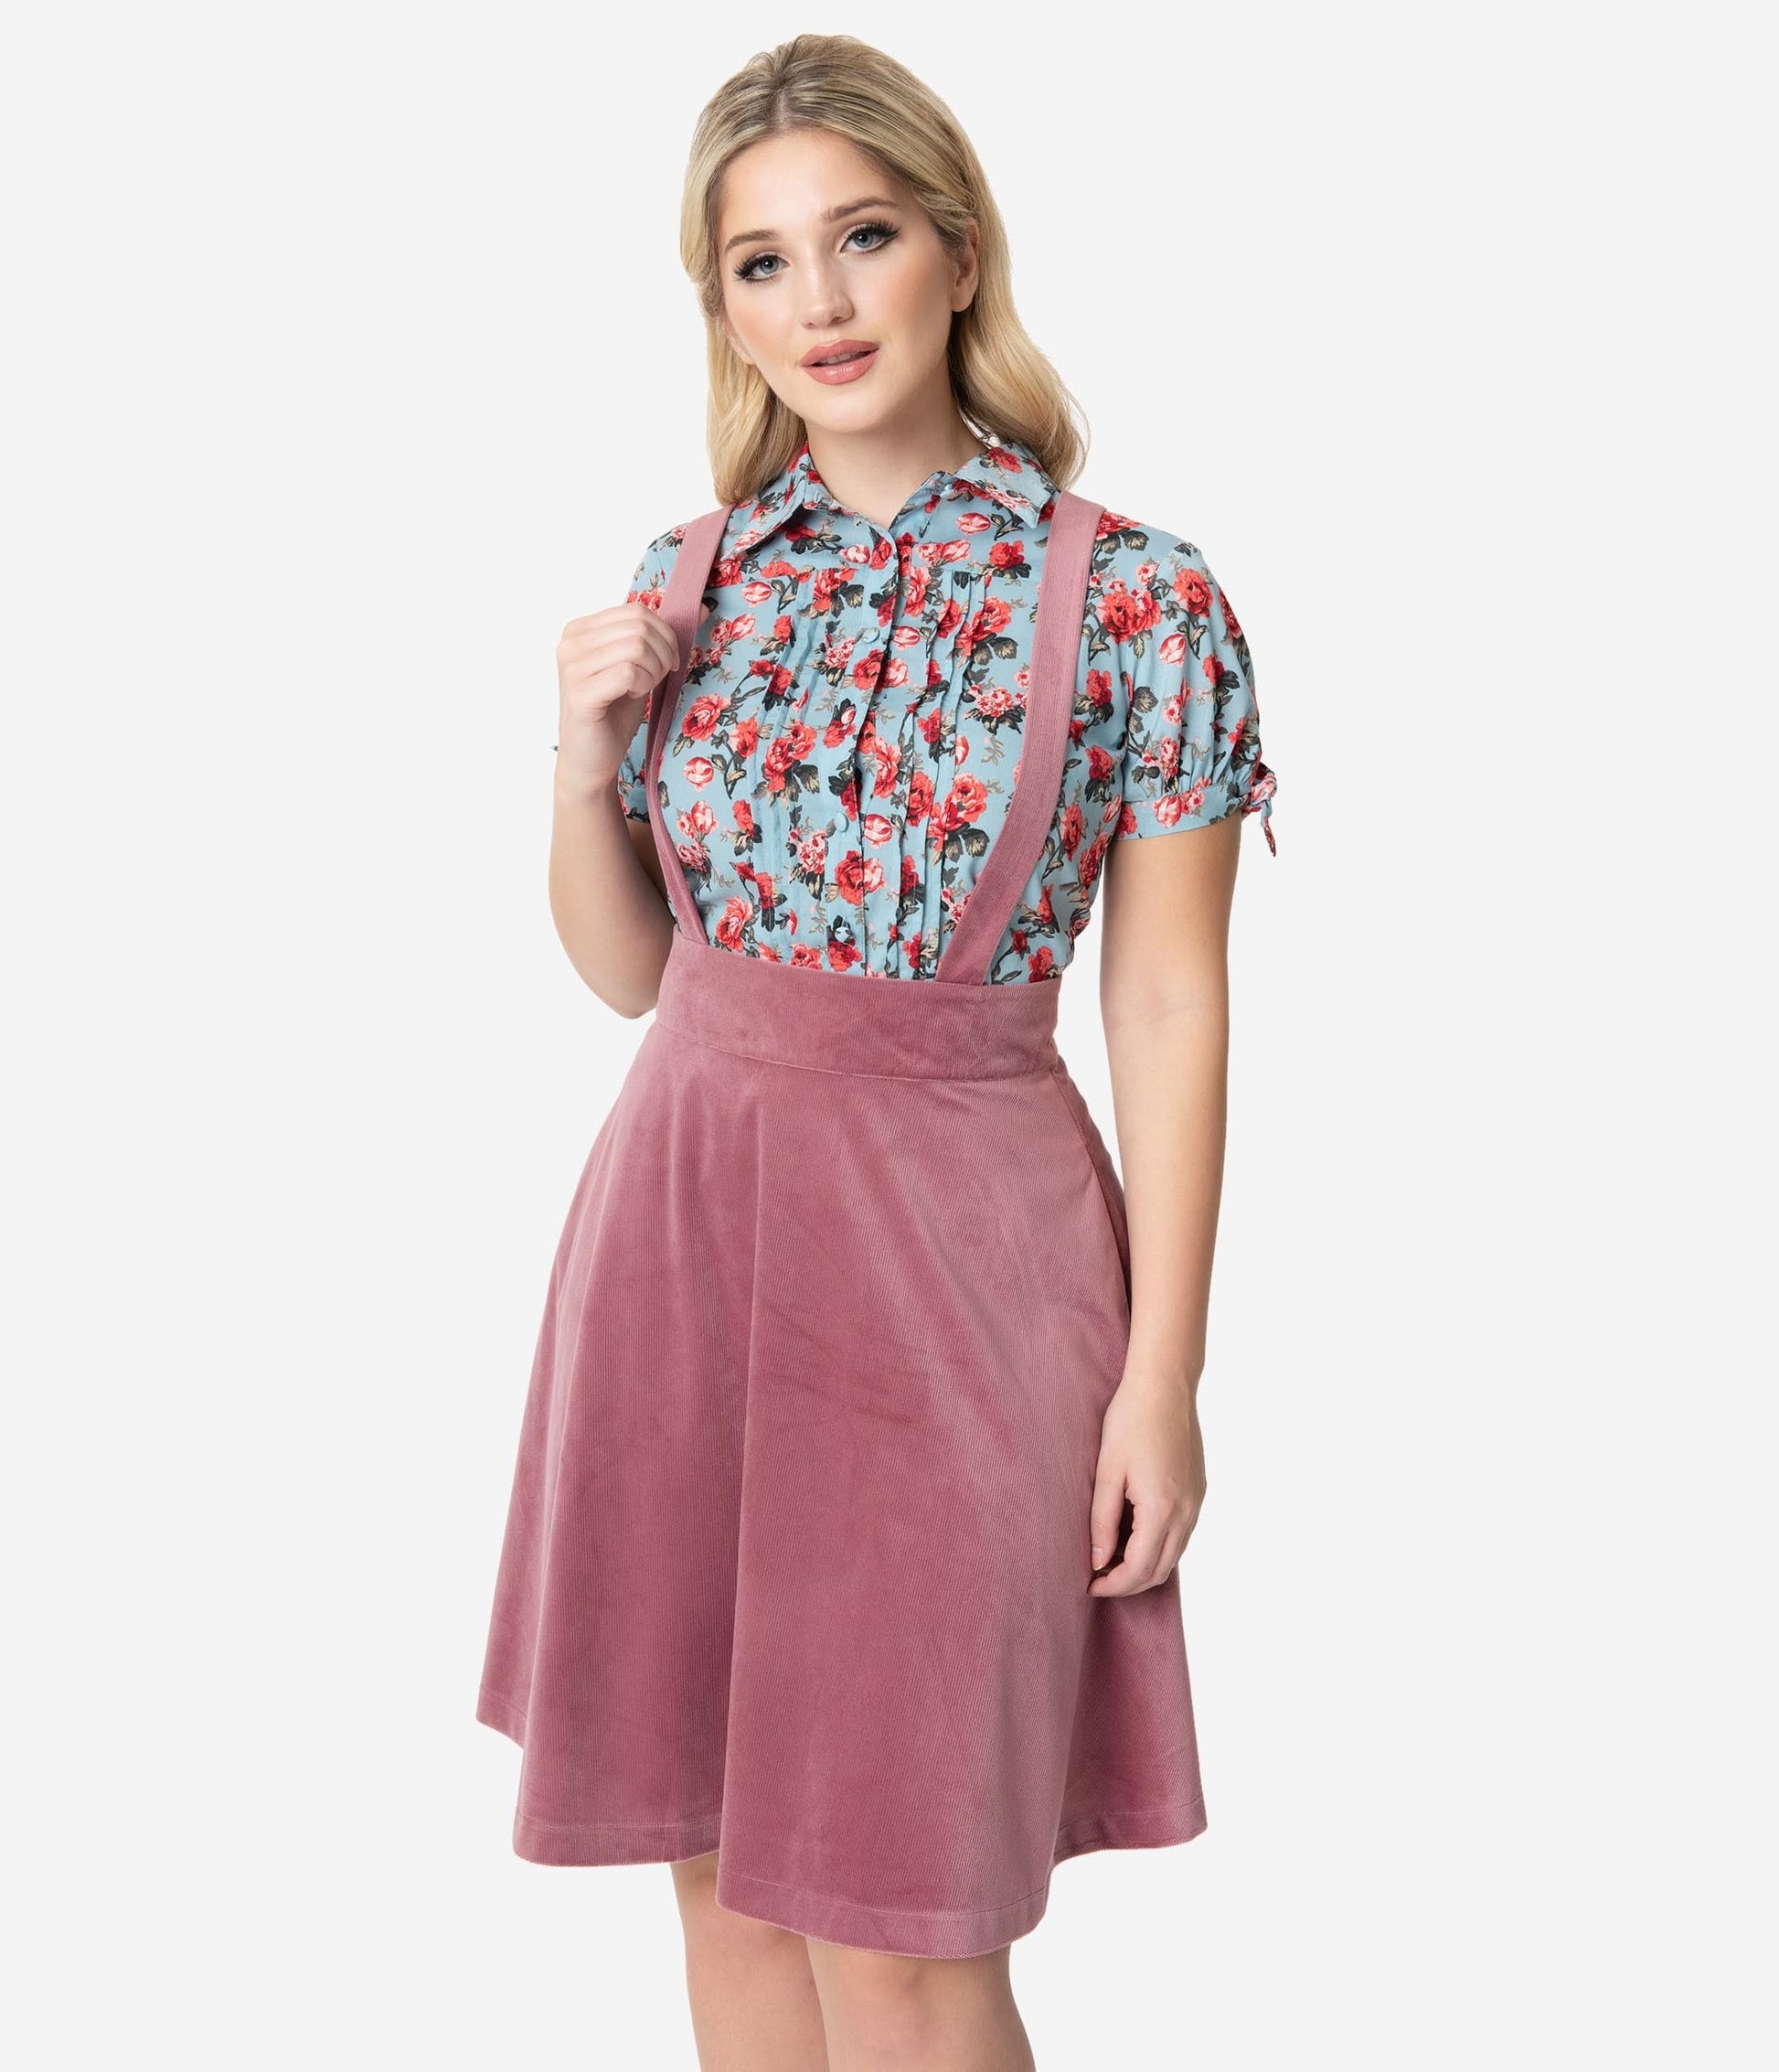 Unique Vintage 1960s Rose Pink Suspender Ruth Flare Skirt